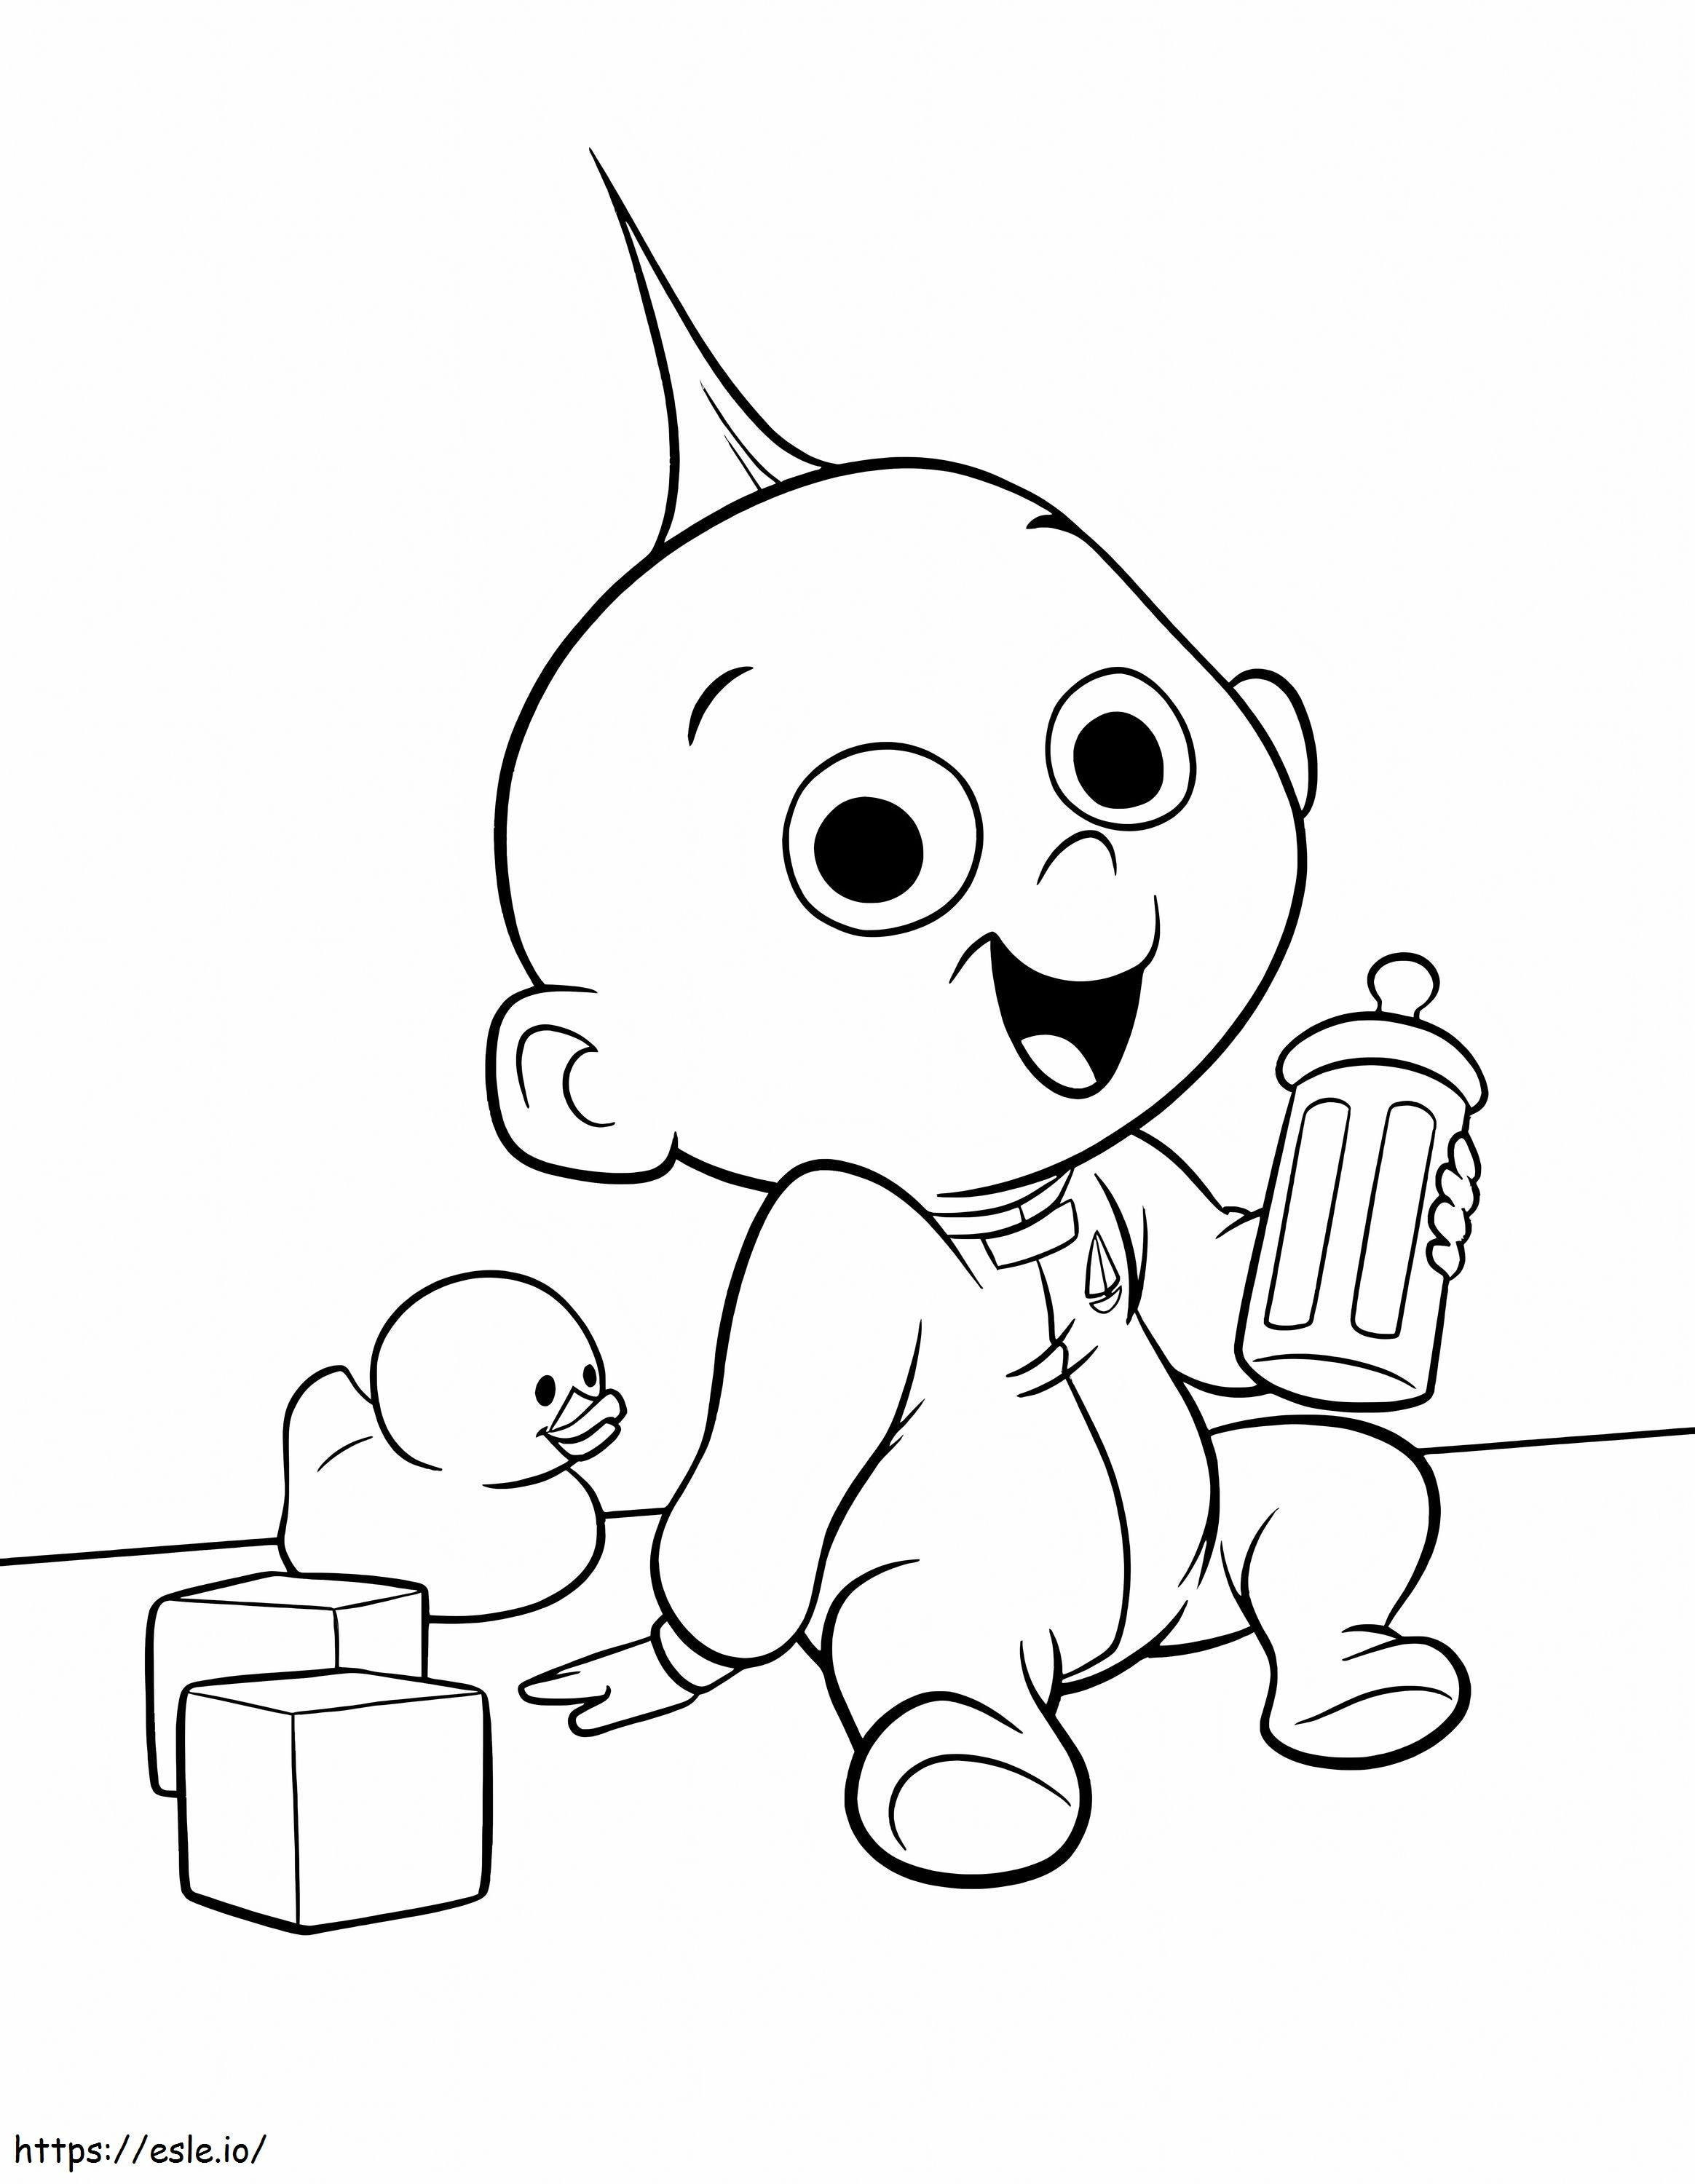 Happy Cartoon Baby coloring page